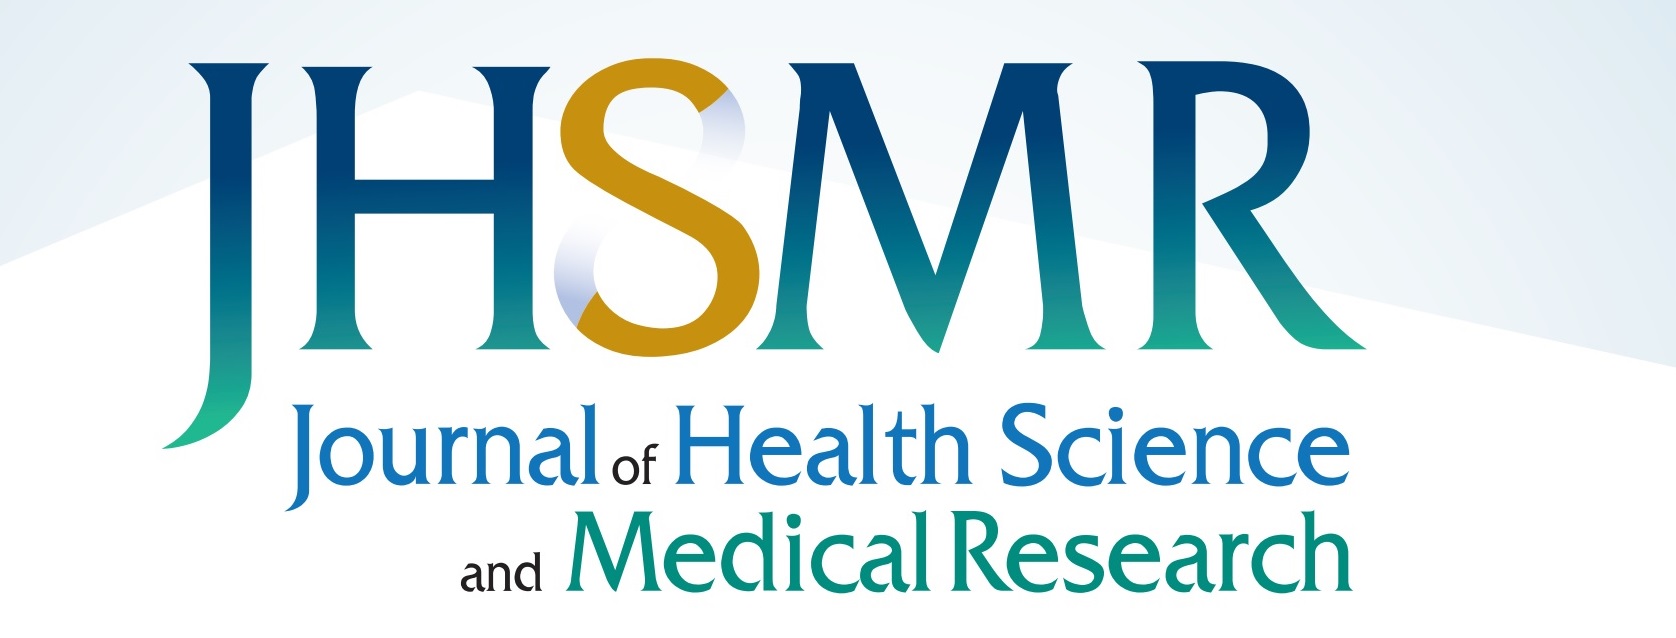 jhsmr logo